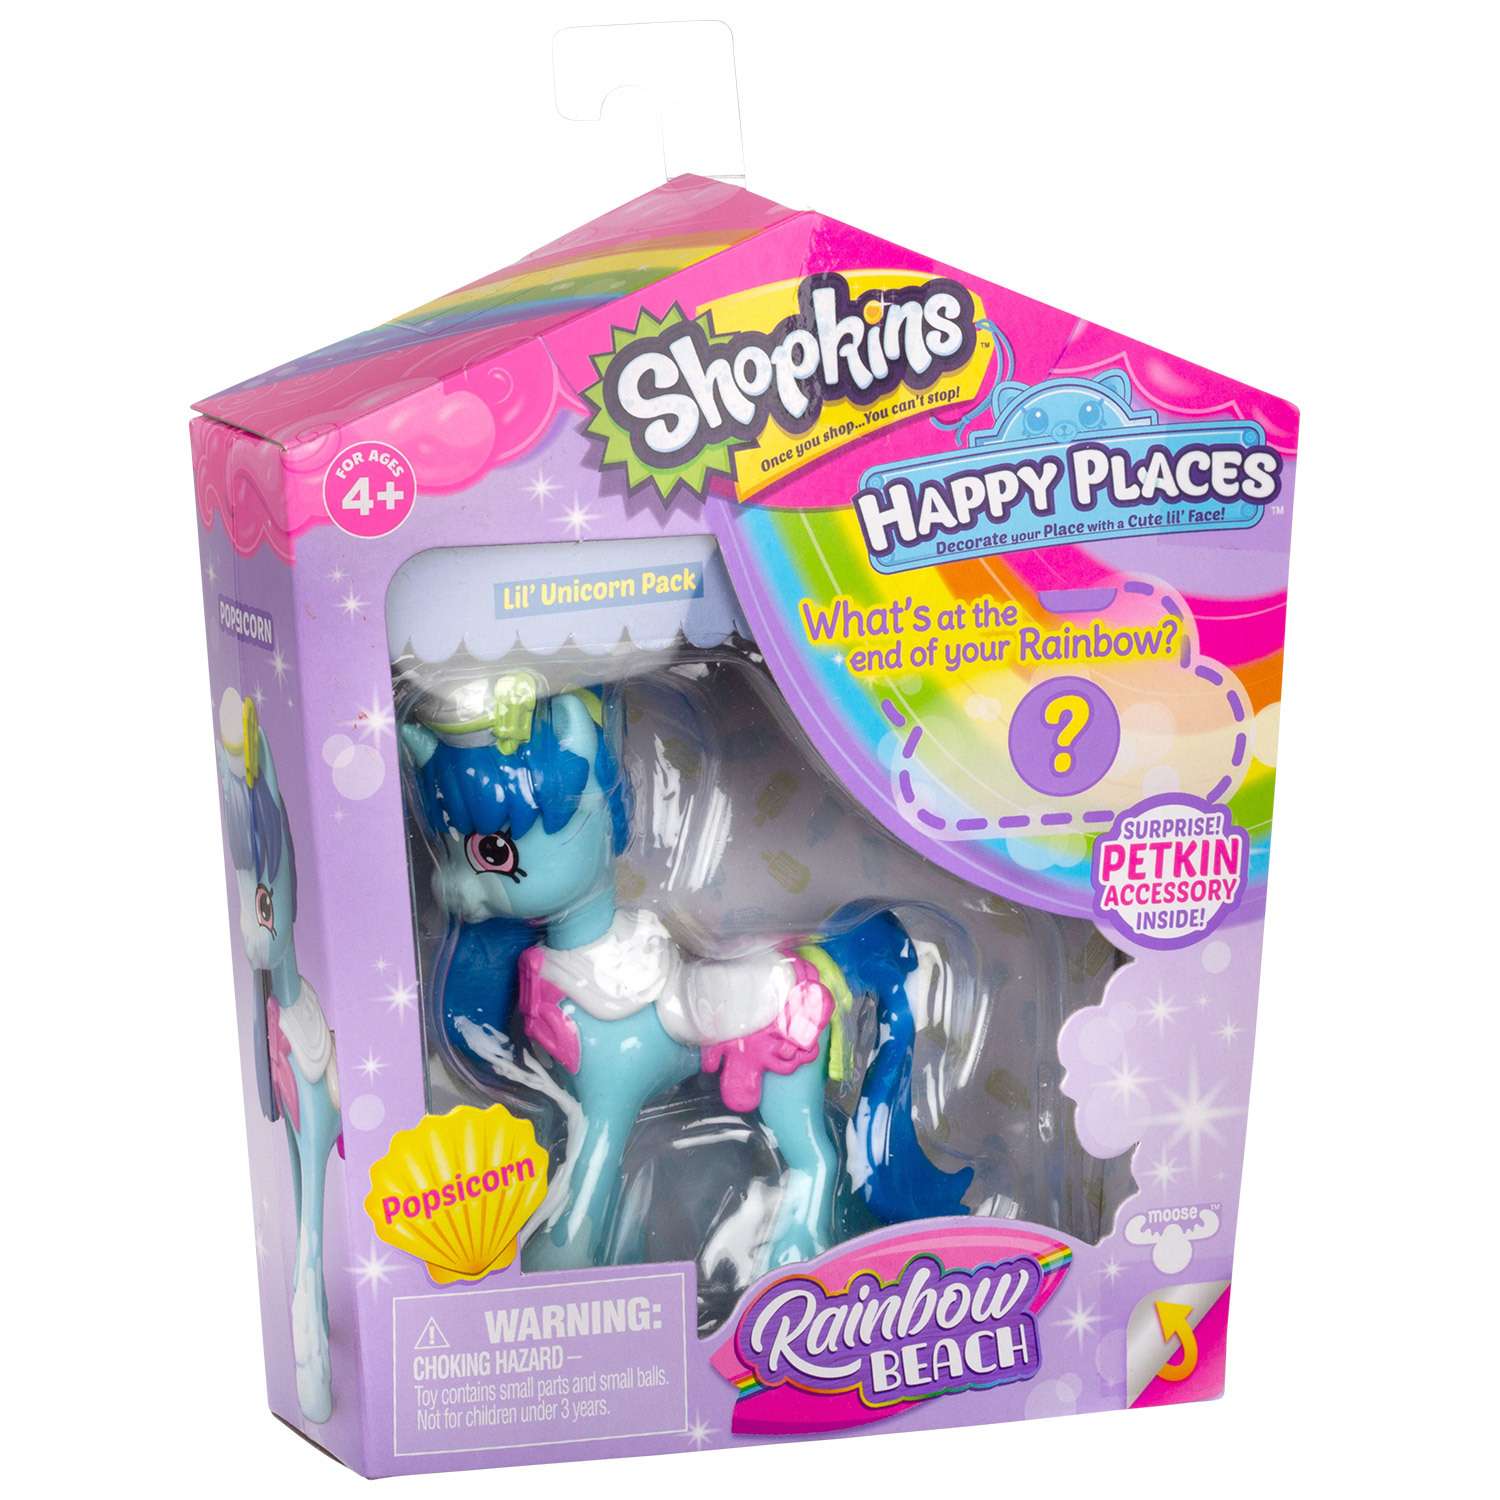 Игрушка Happy Places Shopkins с пони Попсикорн 56843 в непрозрачной упаковке (Сюрприз) - фото 3